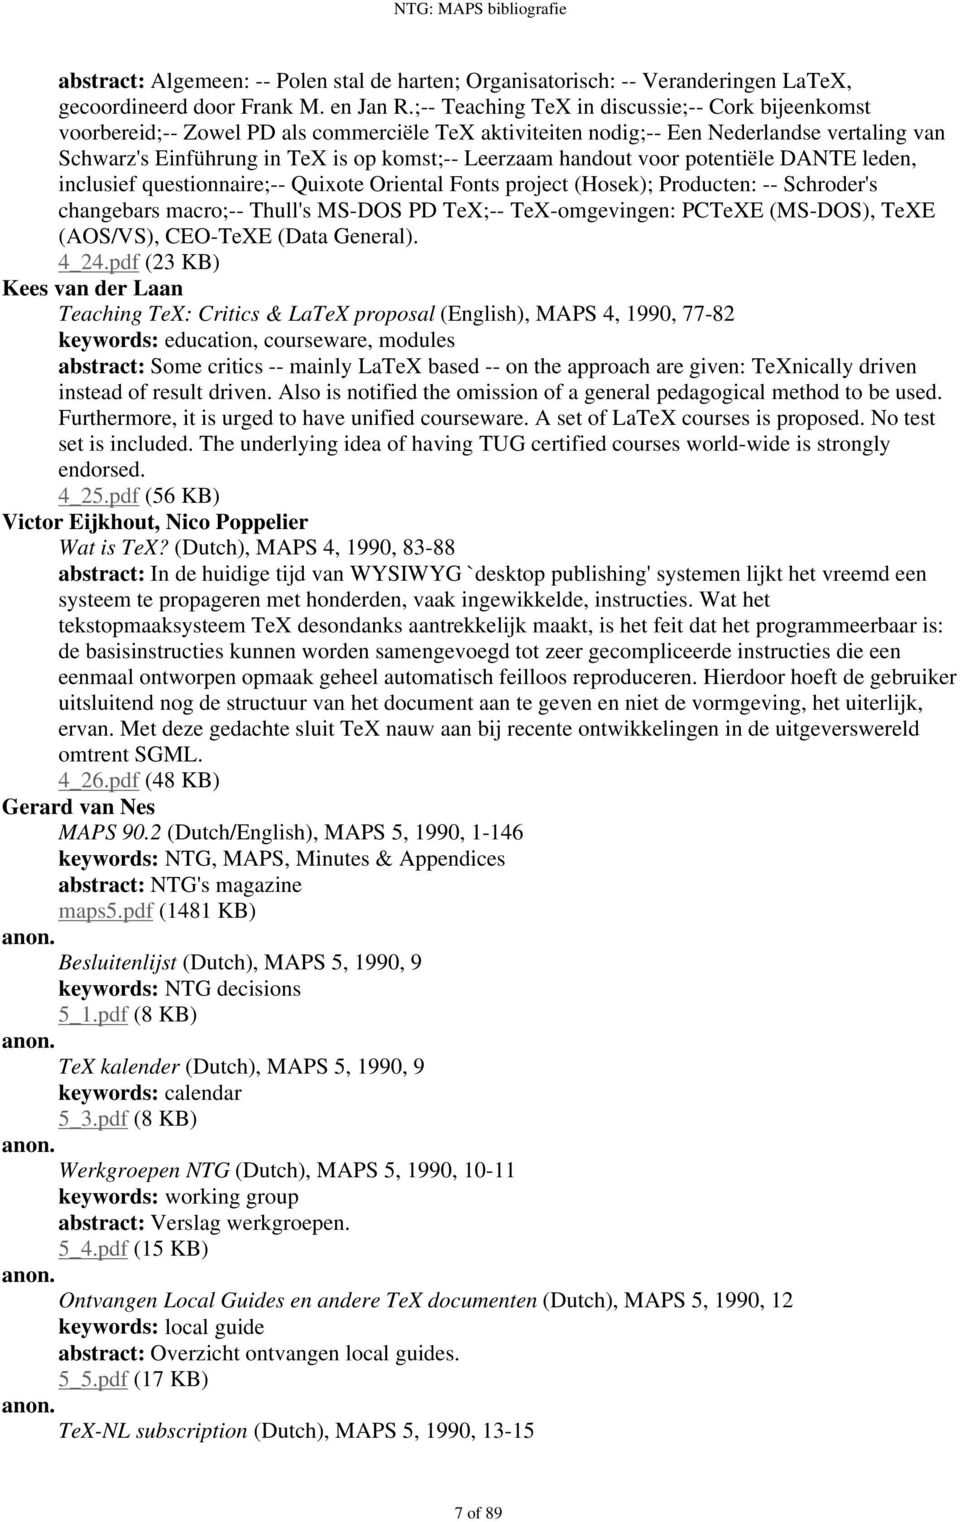 handout voor potentiële DANTE leden, inclusief questionnaire;-- Quixote Oriental Fonts project (Hosek); Producten: -- Schroder's changebars macro;-- Thull's MS-DOS PD TeX;-- TeX-omgevingen: PCTeXE